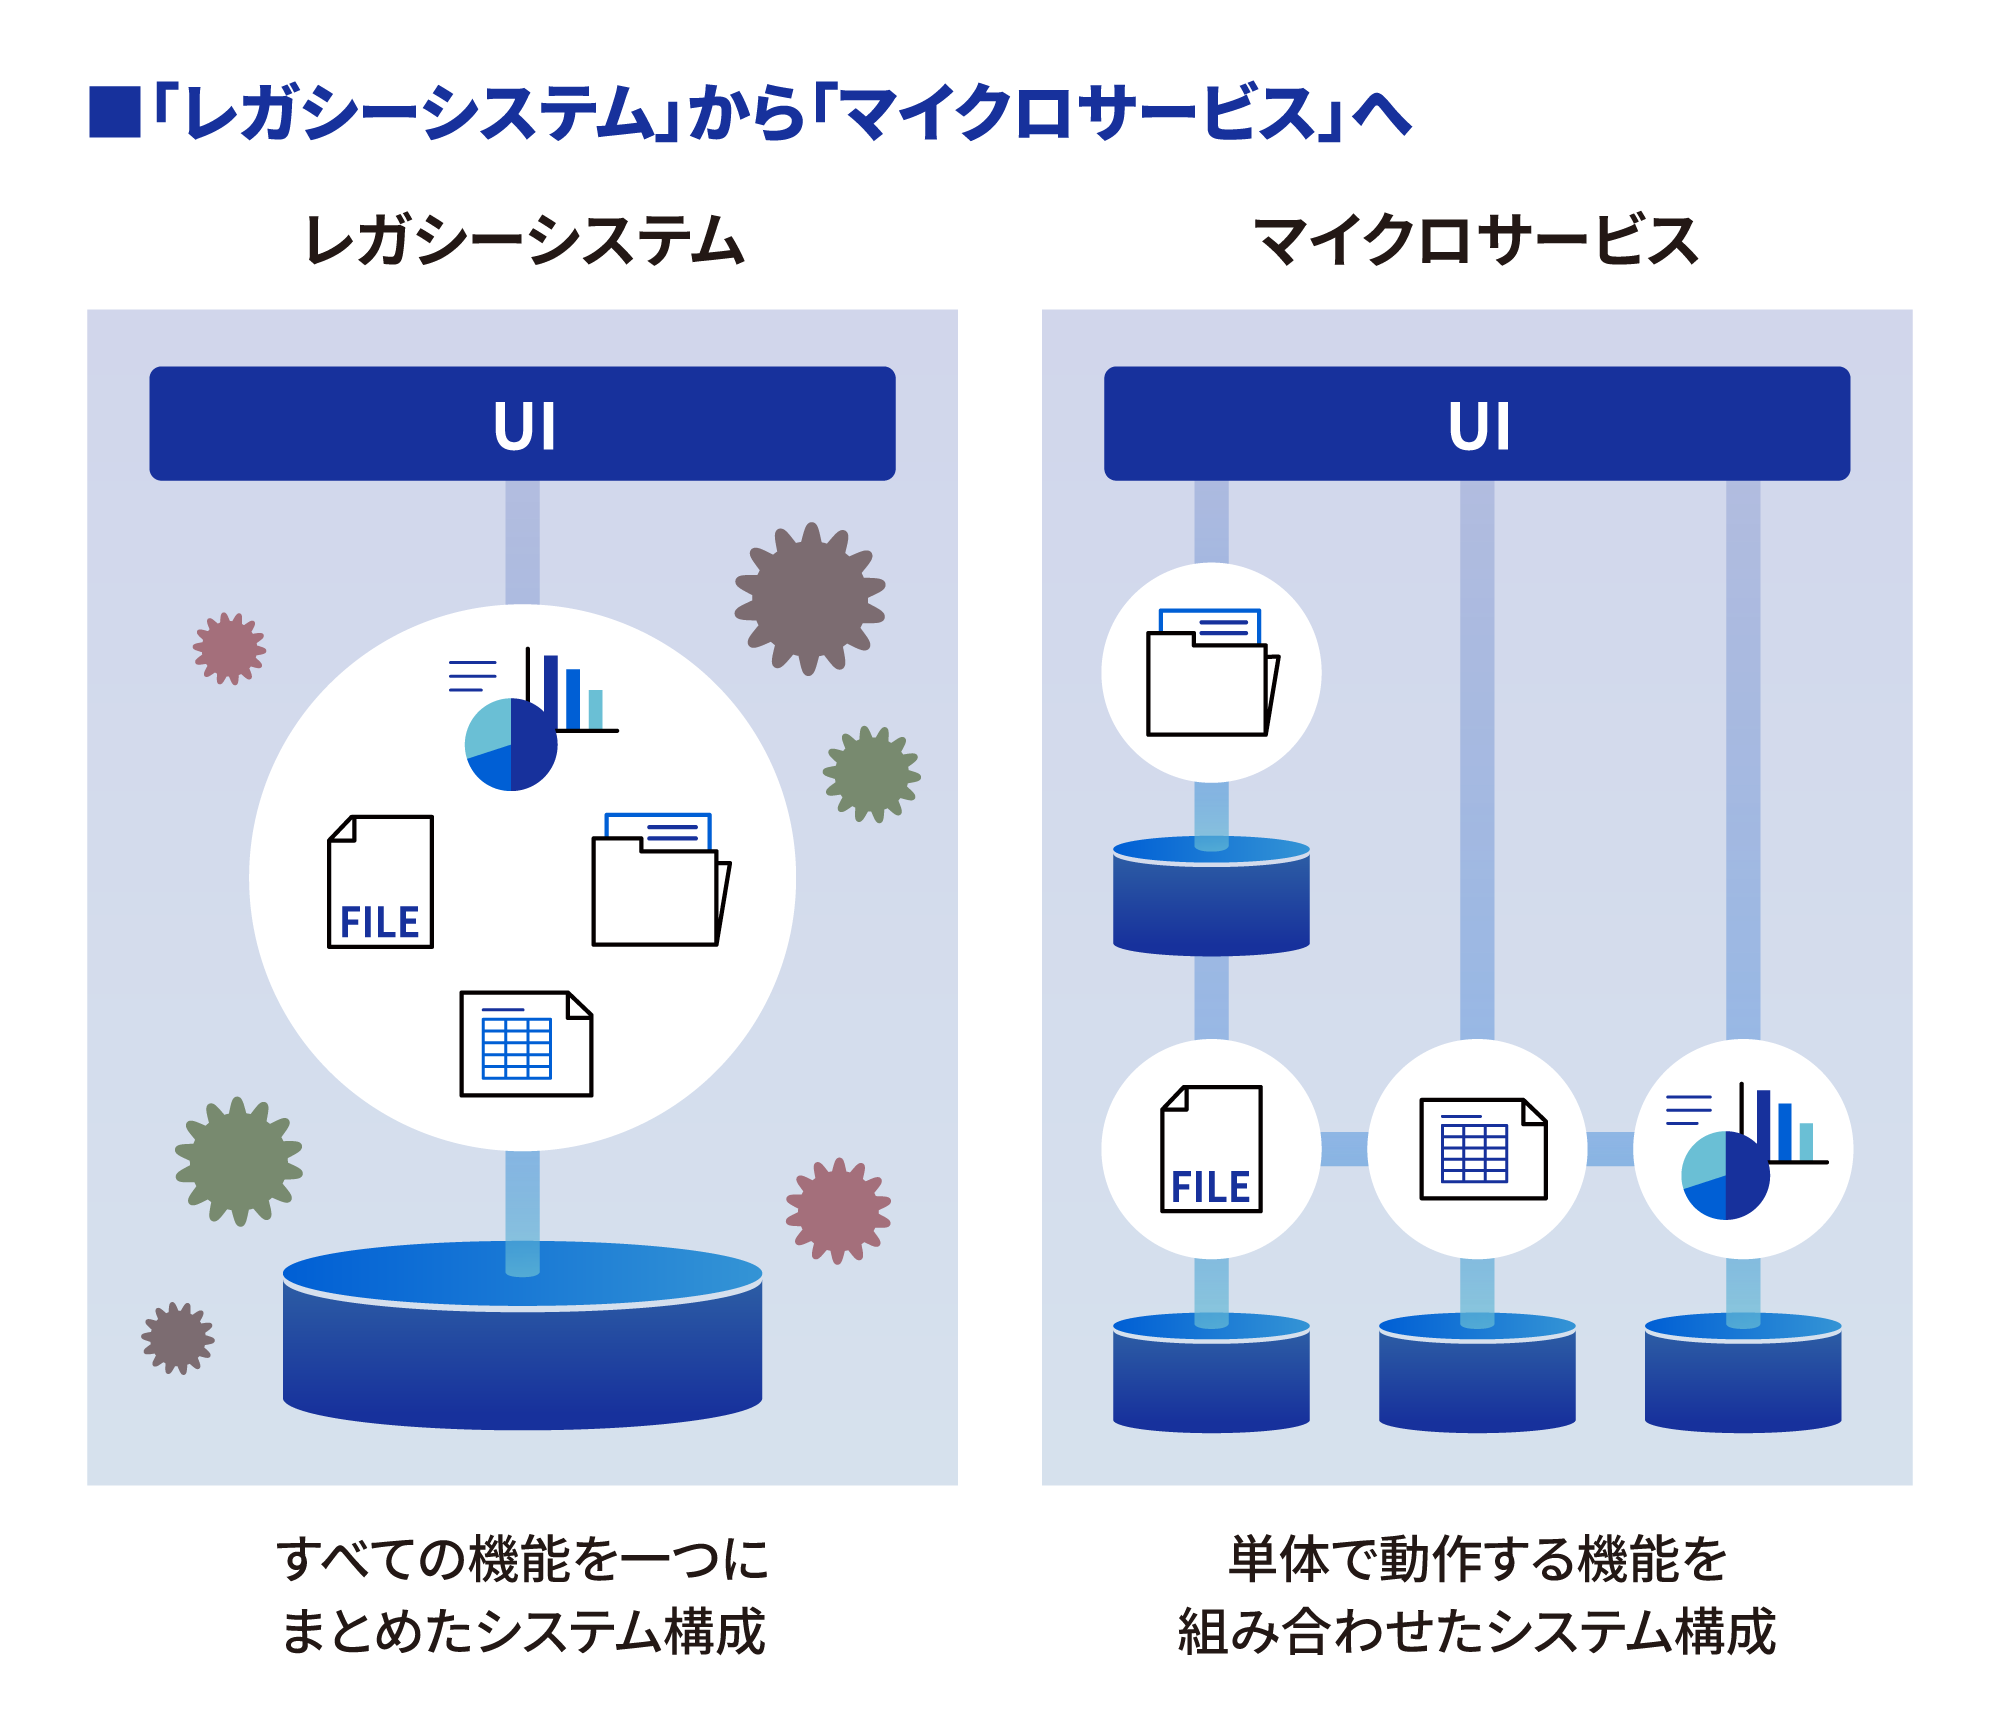 レガシーシステムとマイクロサービス化の対比イメージ図